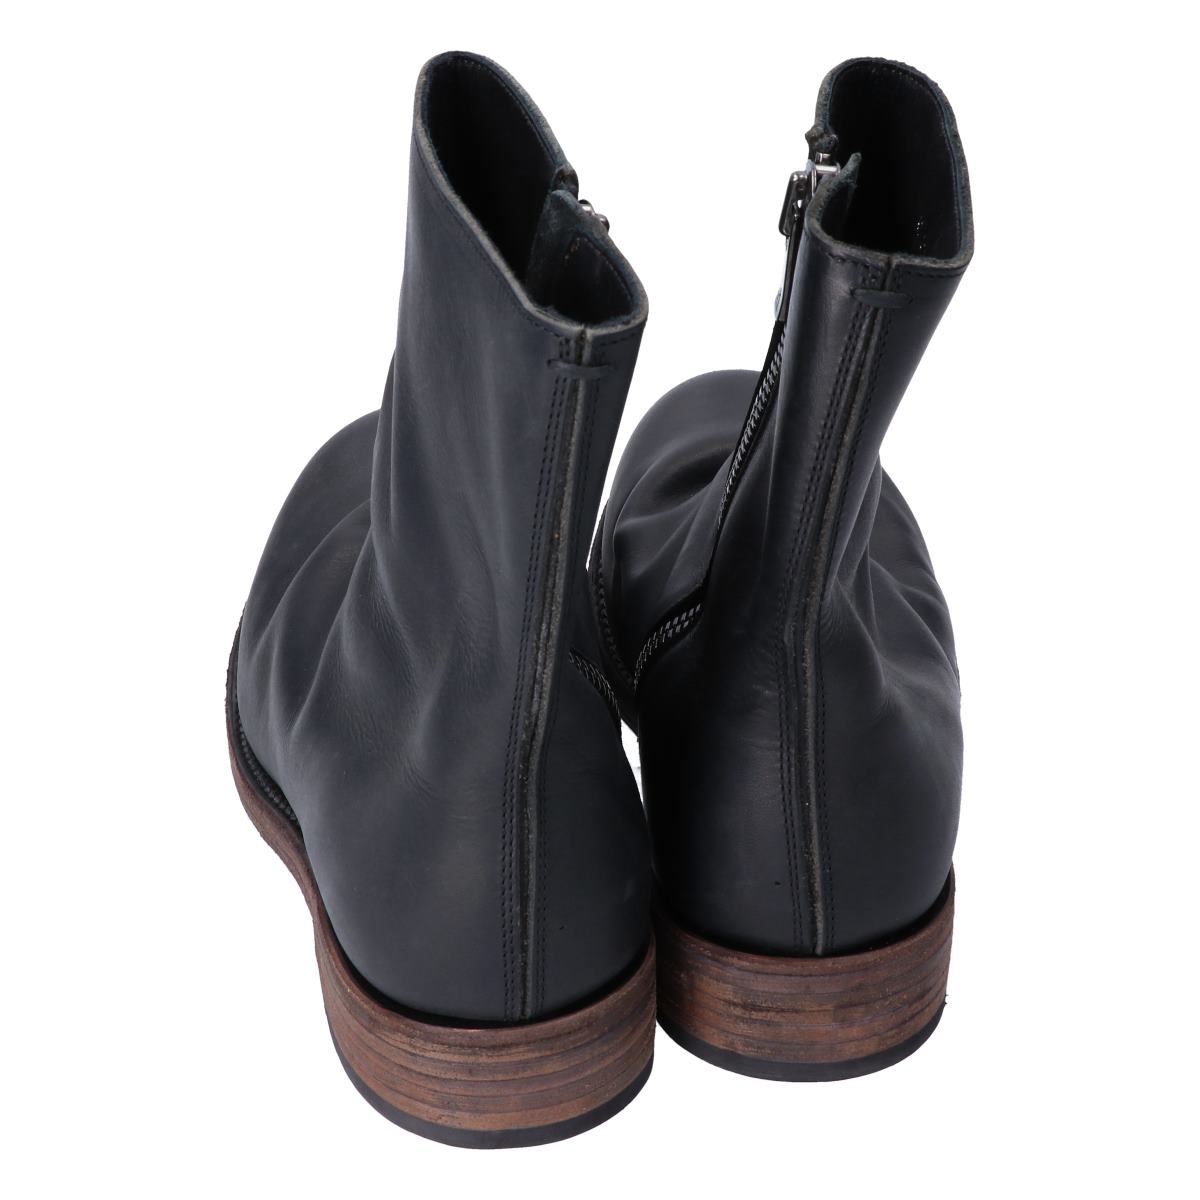 zipper dress boots